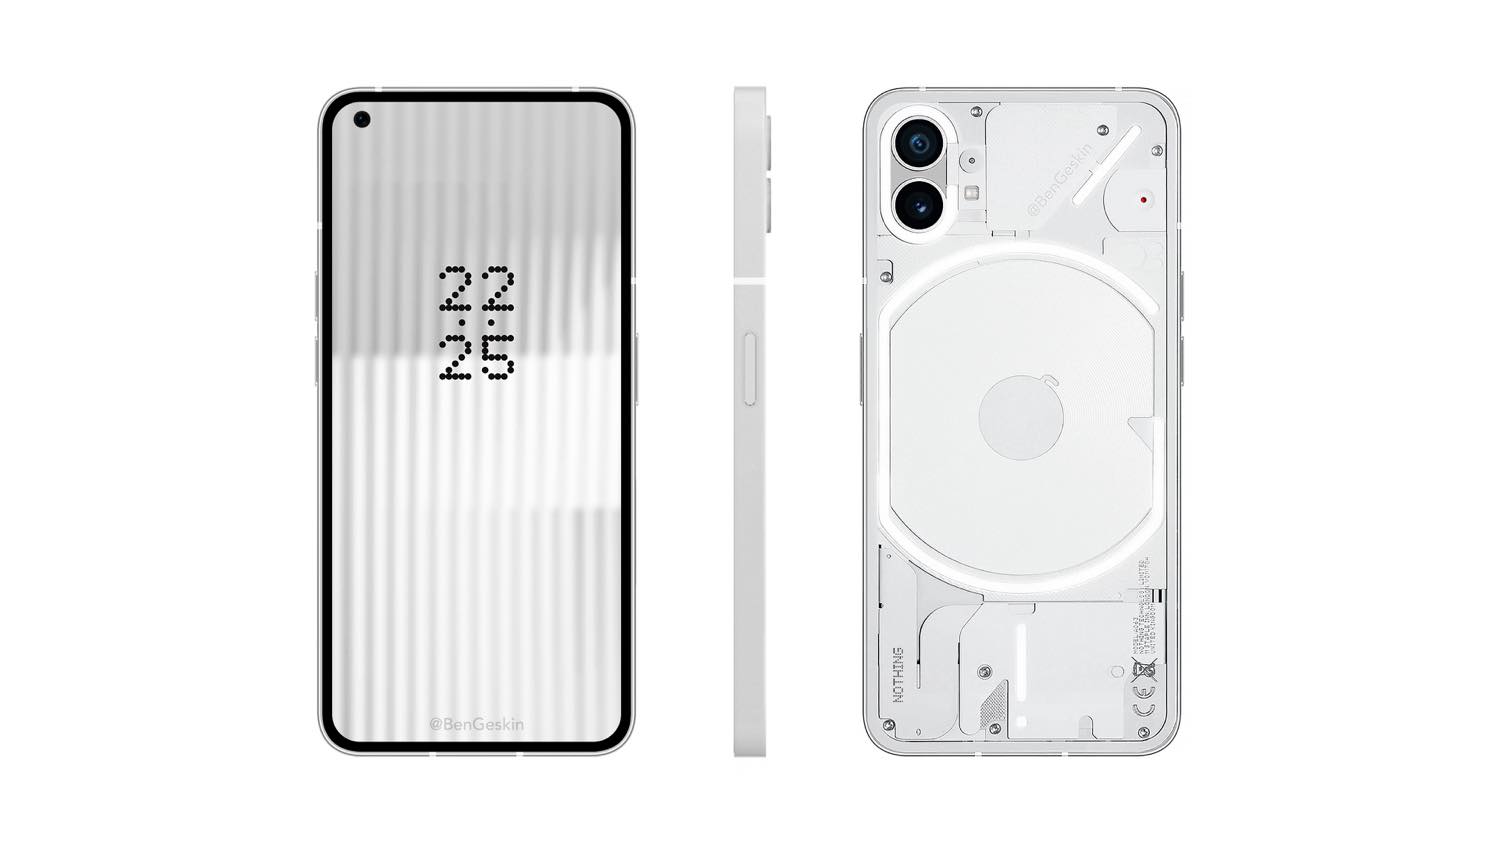 ｢Nothing Phone (1)｣、｢Nothing OS 1.5 (Android 13)｣ではカメラのオートフォーカスの動作がよりスムーズになる模様